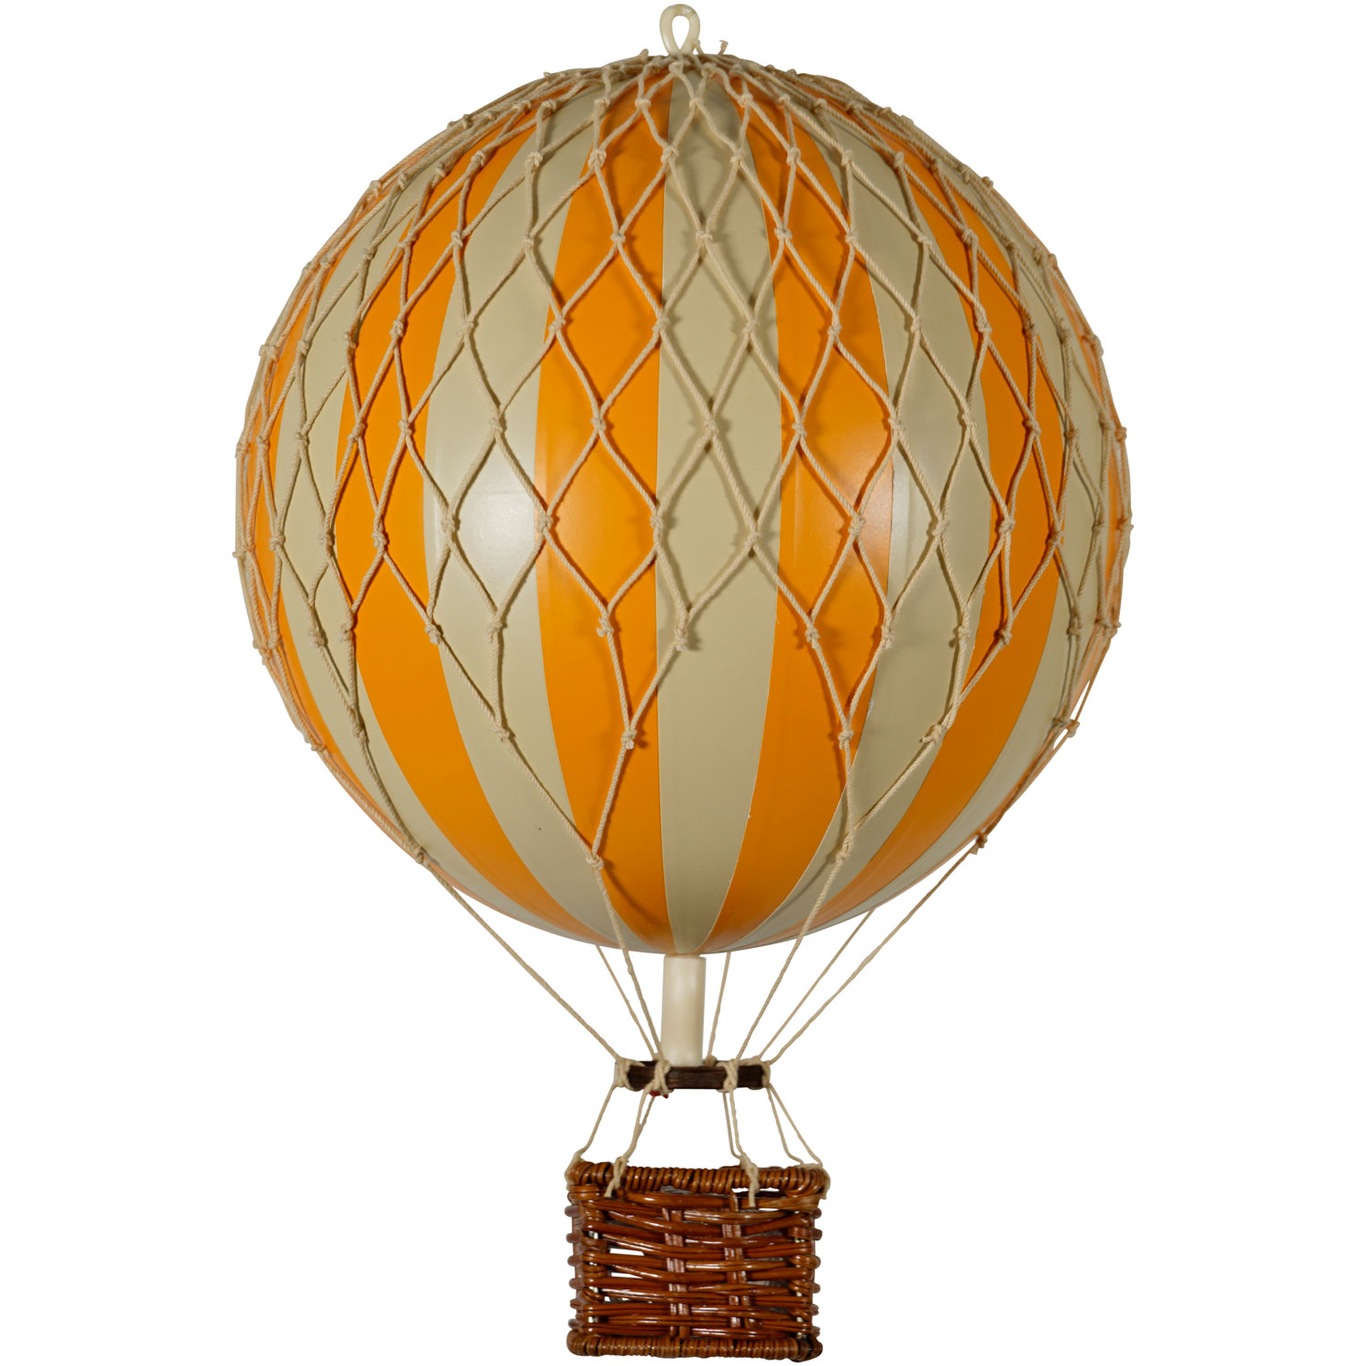 Travels Light Heißluftballon 18x30 cm, Orange / Elfenbein